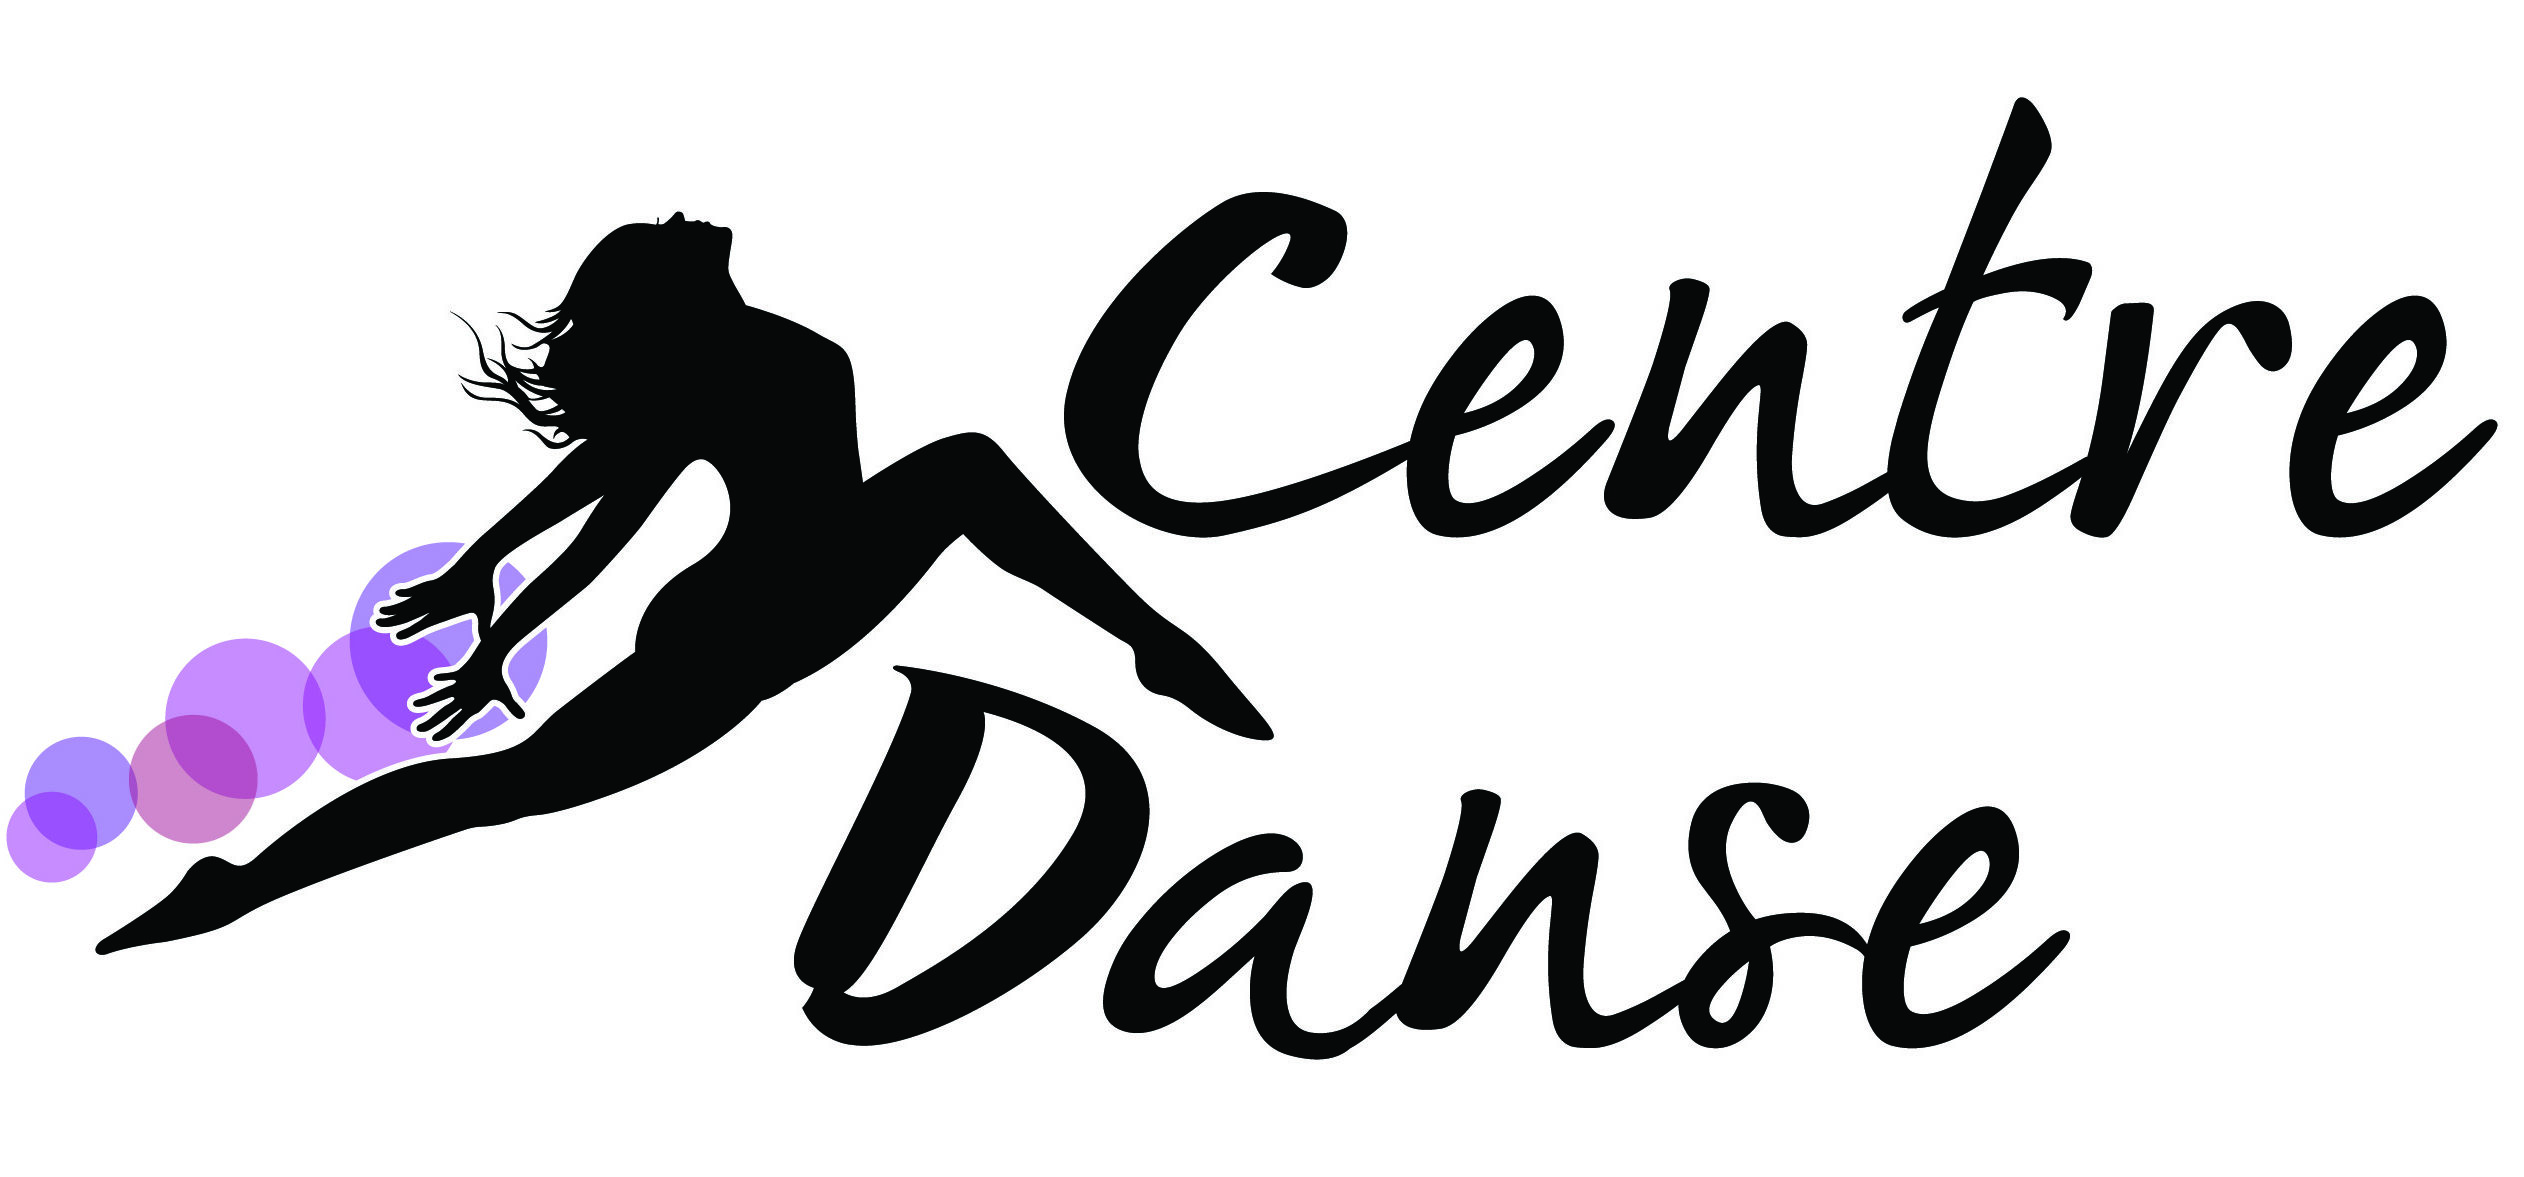 Centre Danse